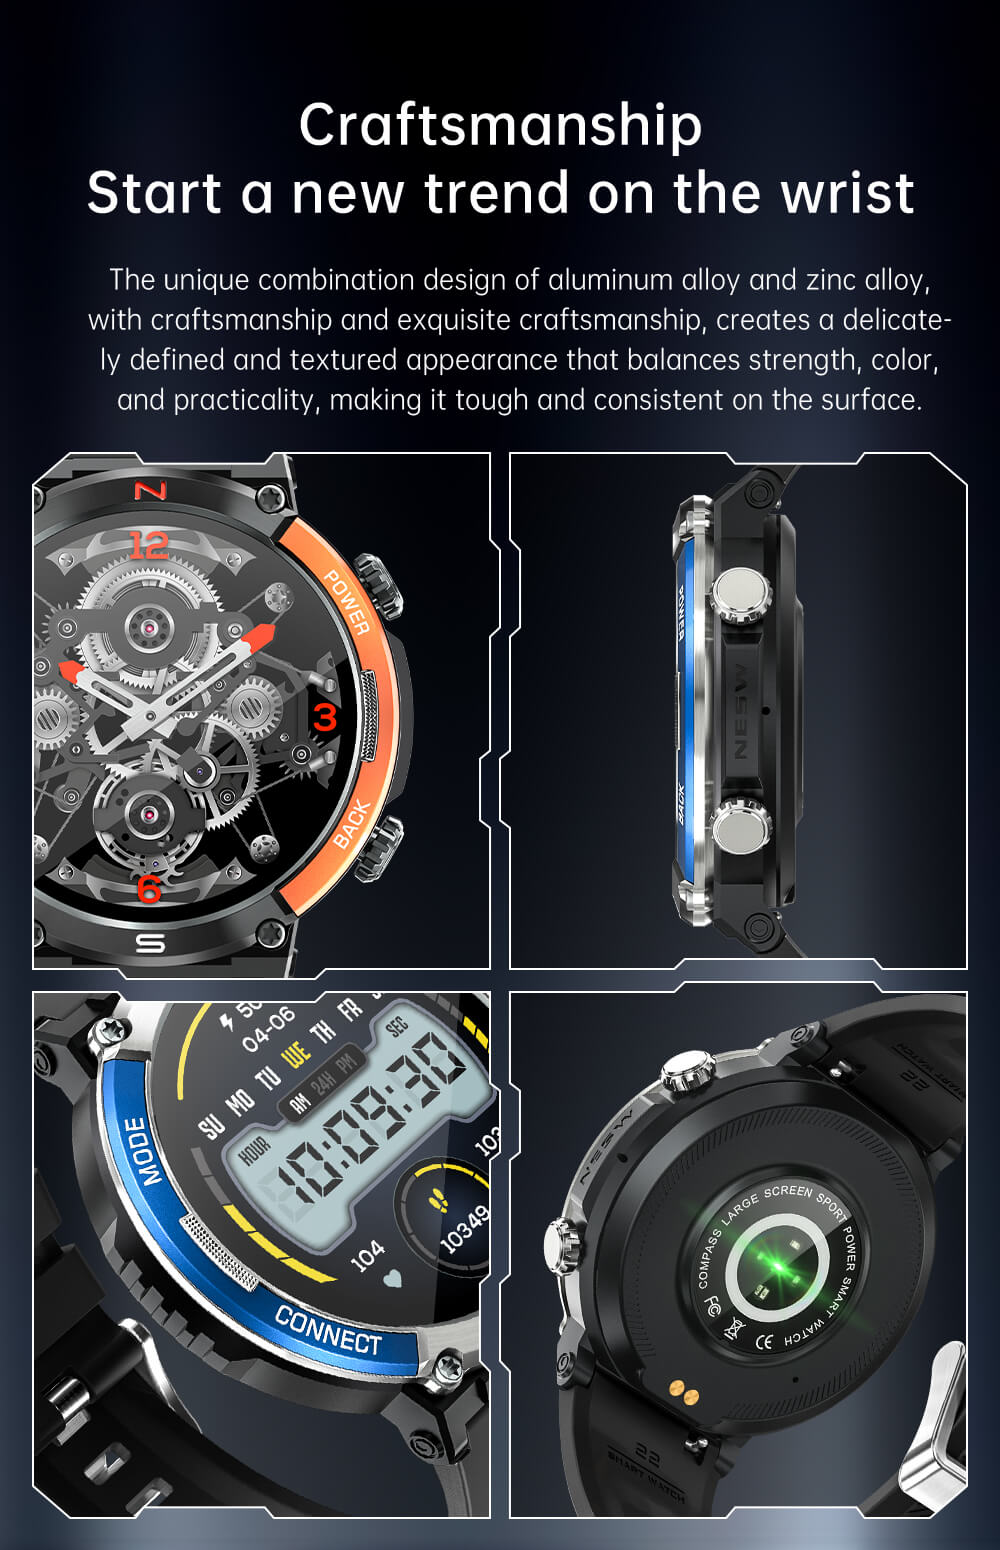 Findtime Smartwatch EX36